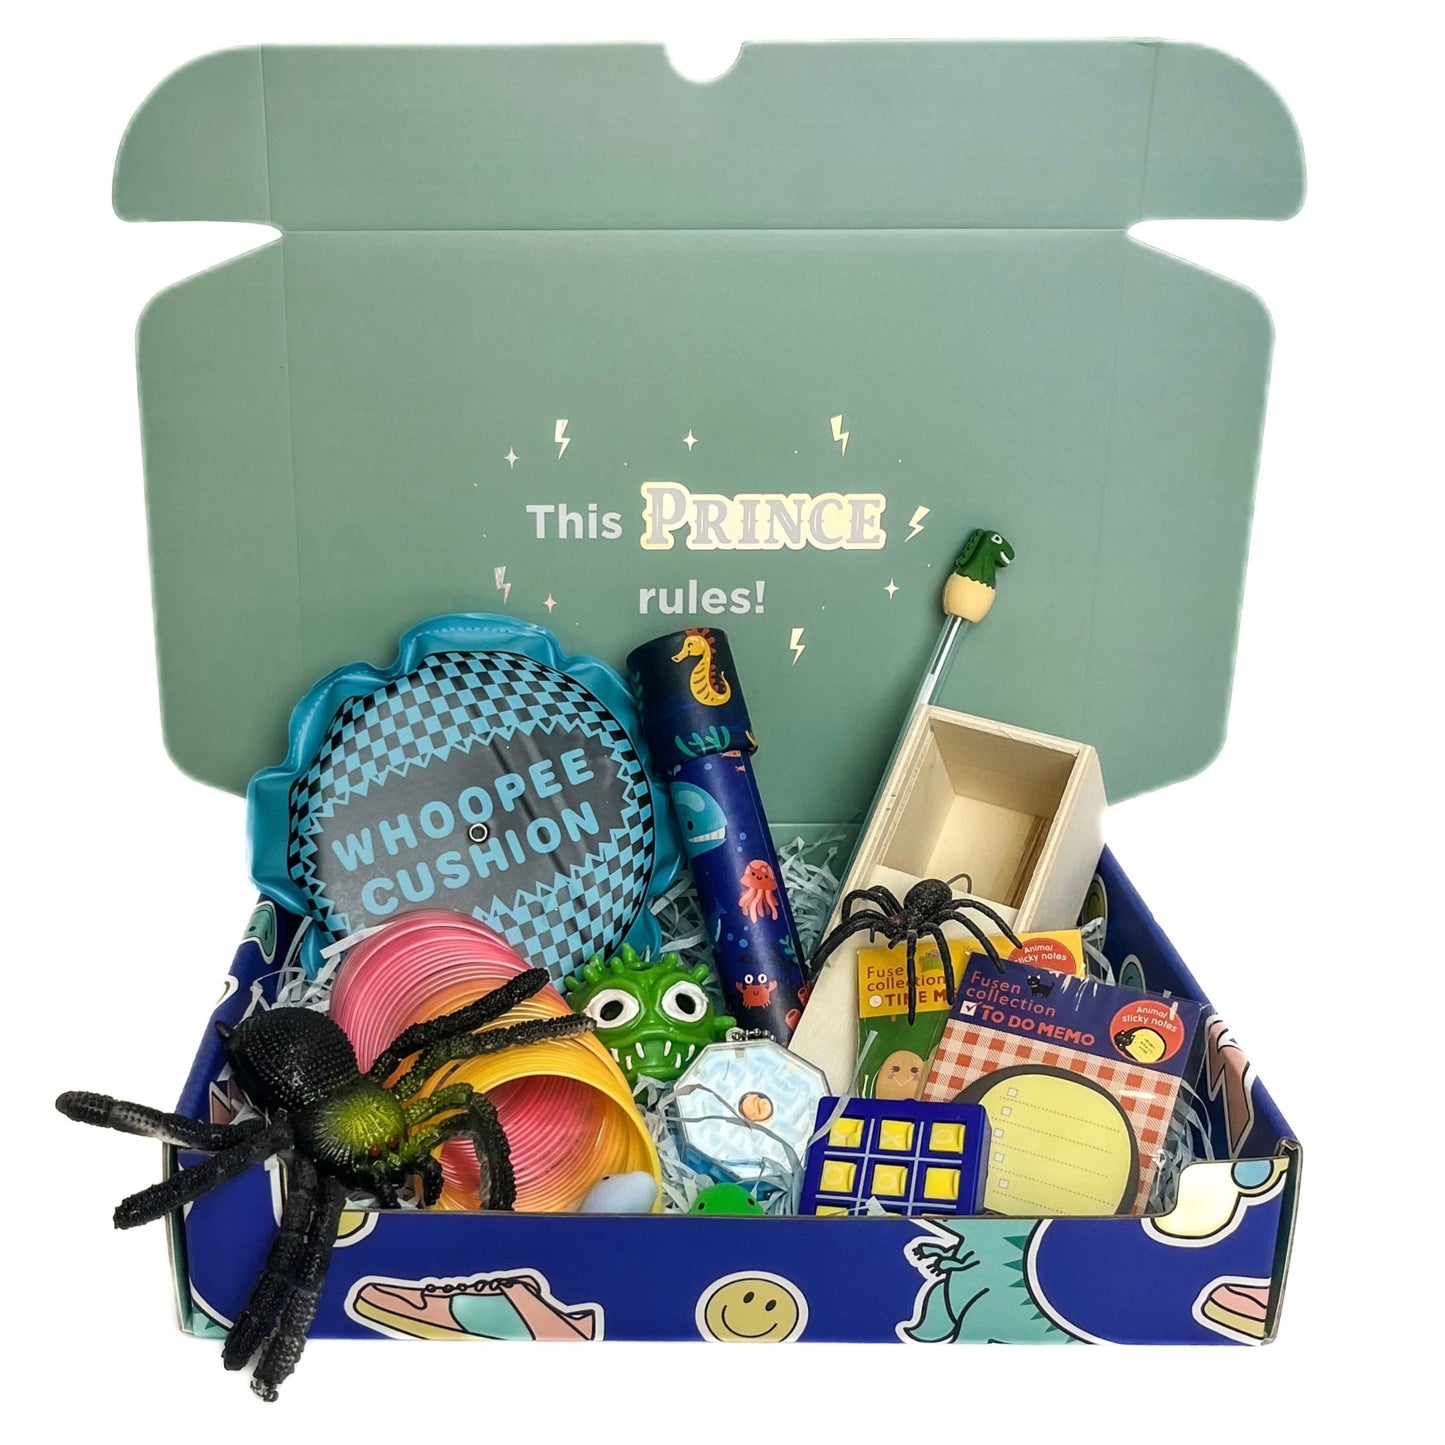 PRIMA KIDS: Easter Box Gift - Boy/Girl/unisex